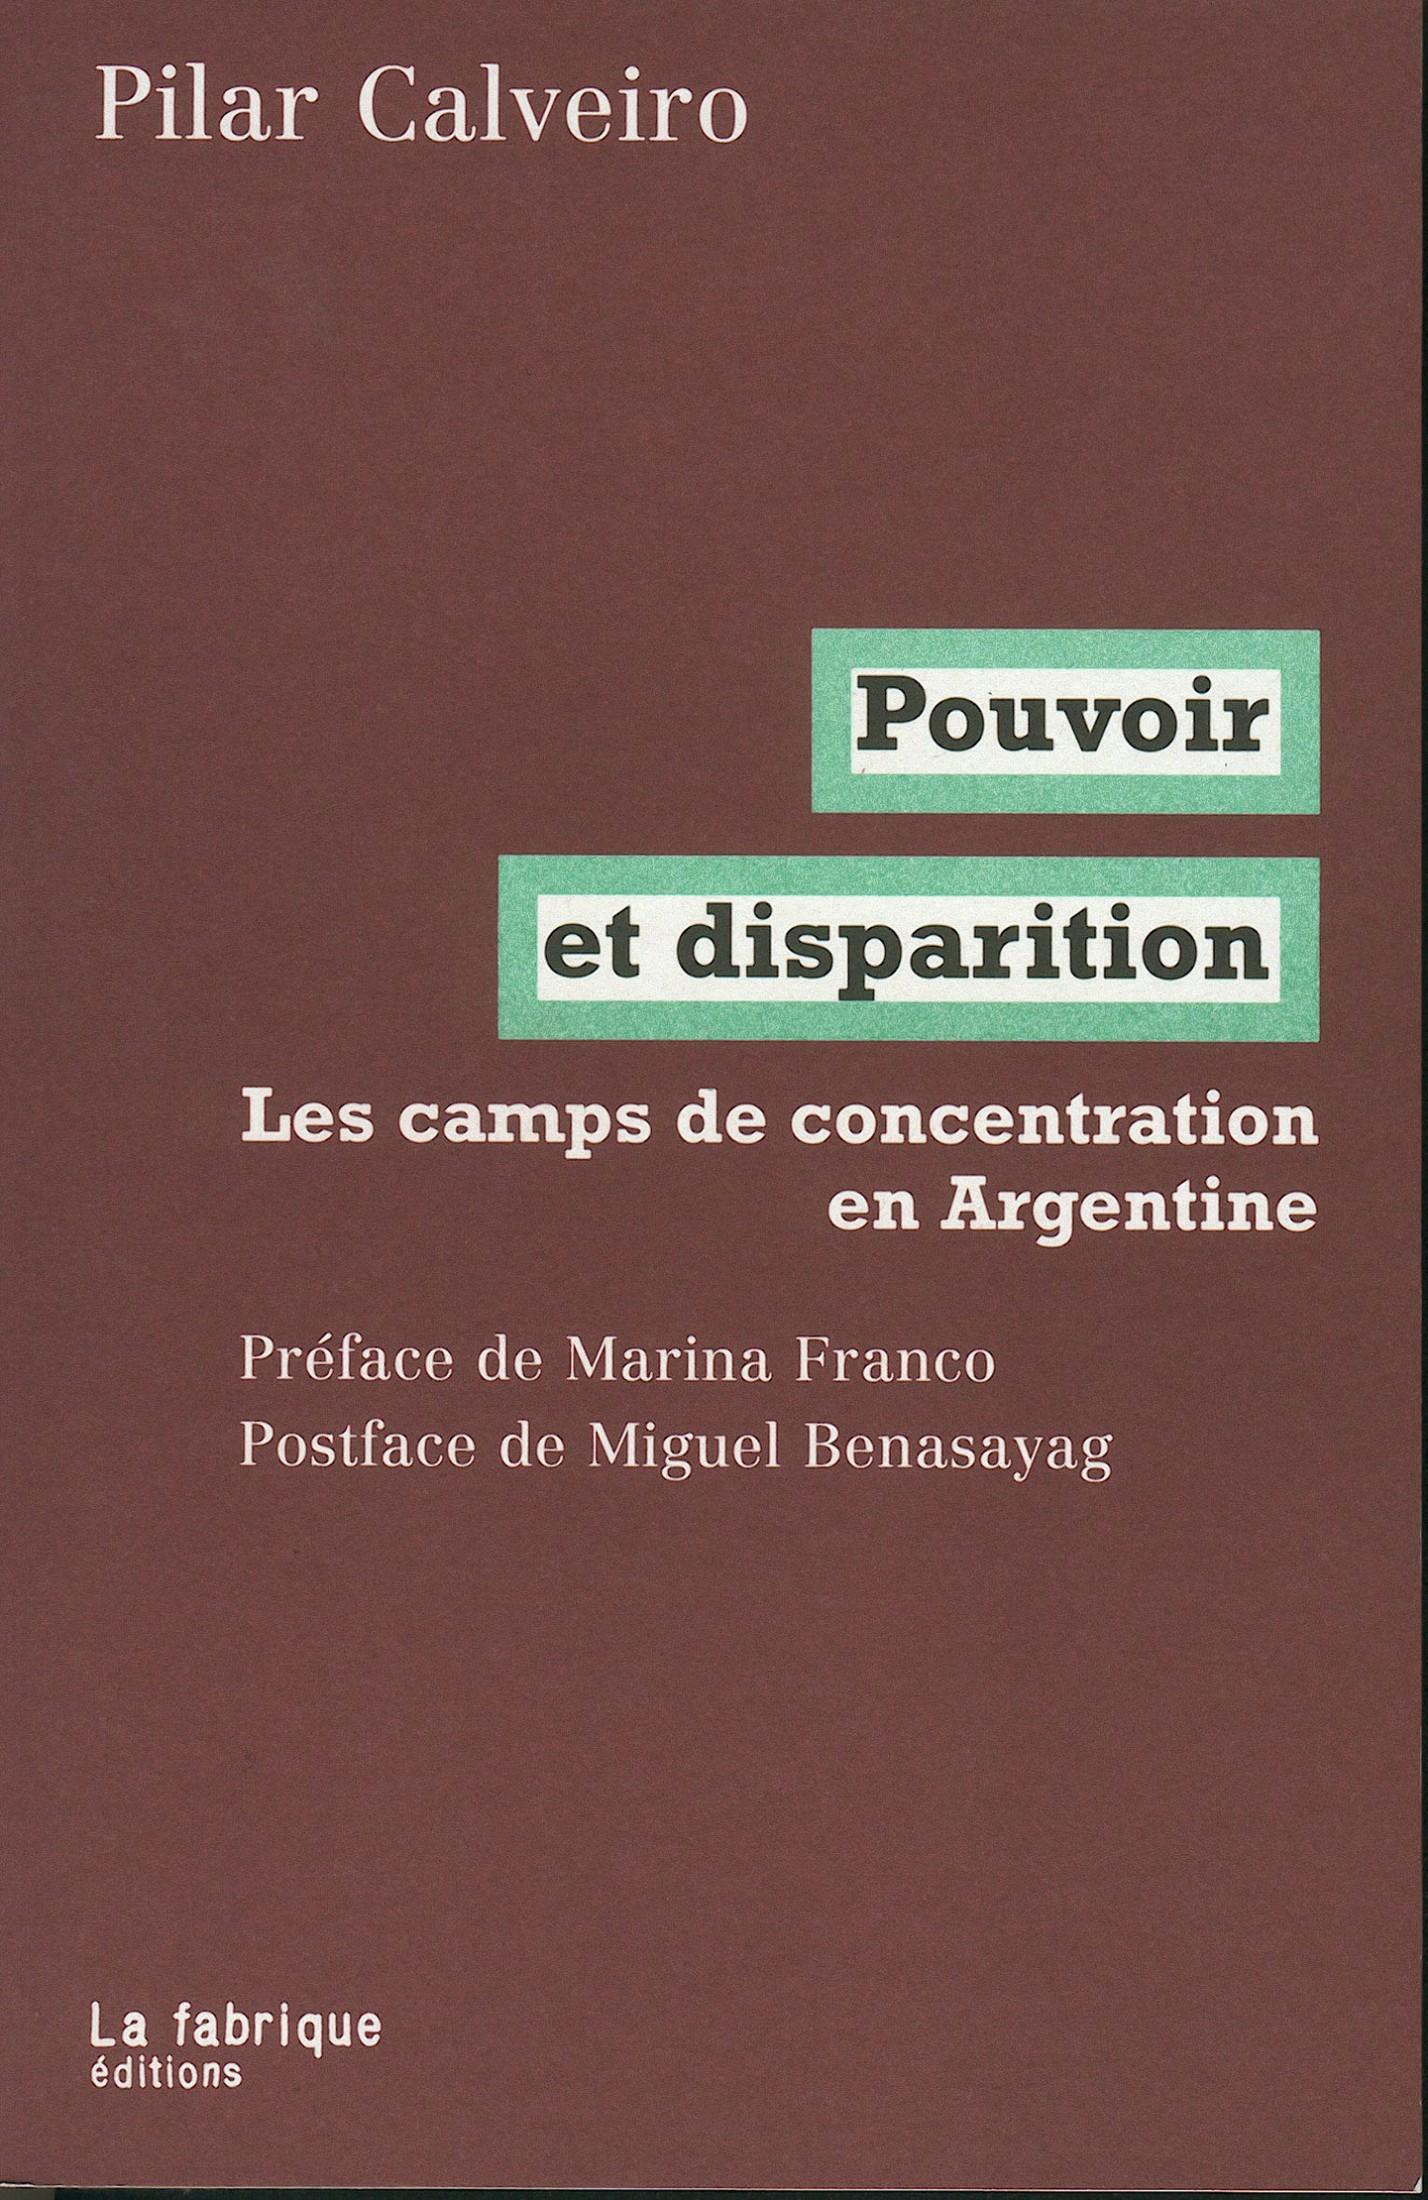 Pouvoir et disparition : Les camps de concentration en Argentine. Pilar Calveiro